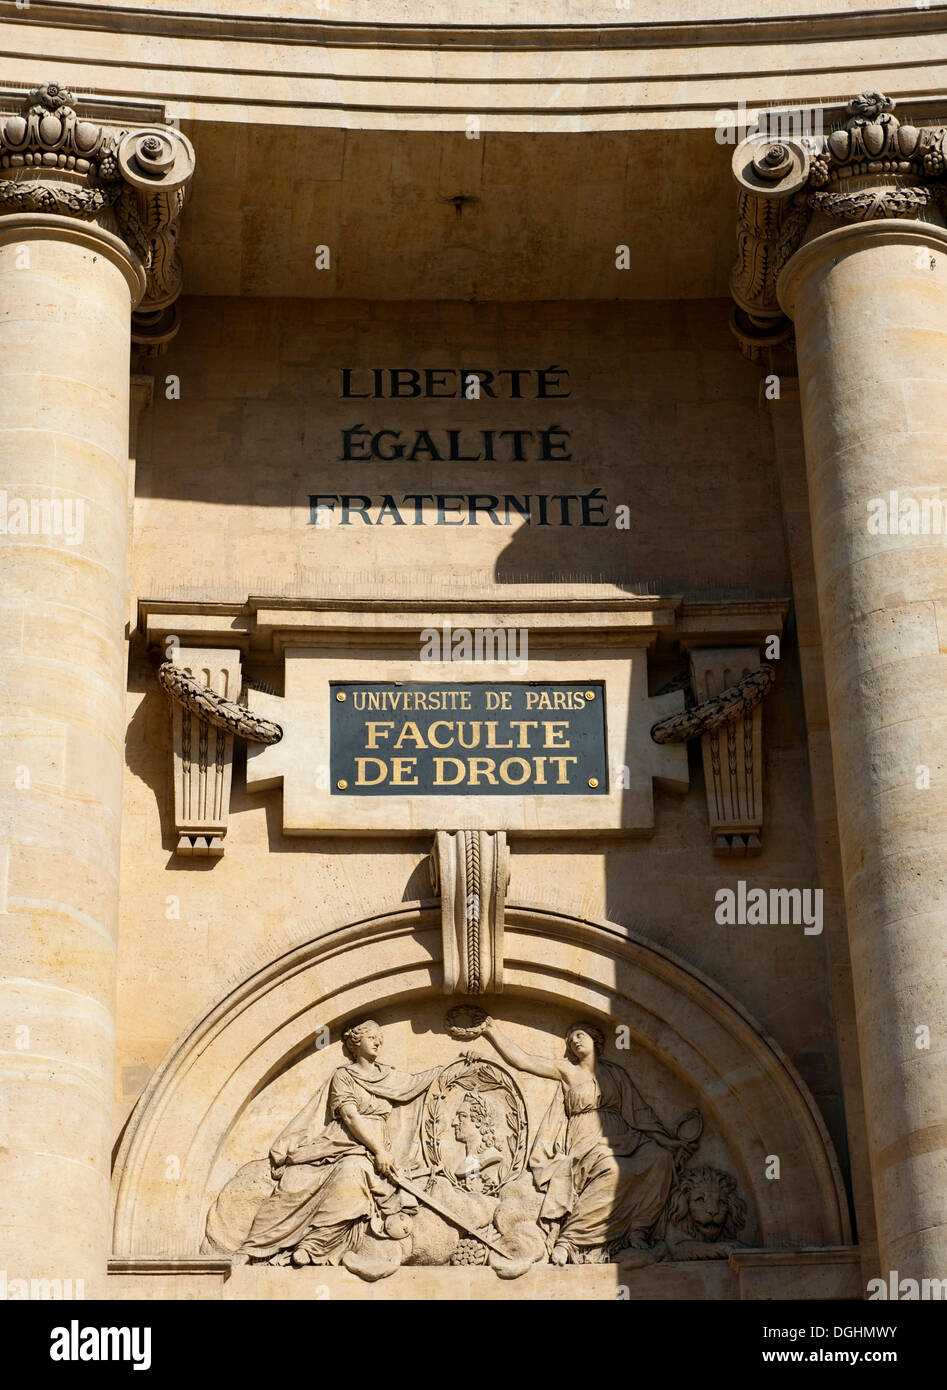 Universität Paris, Faculty of Law, Place du Panthéon, Inschrift Liberté, Egalité, Fraternité, Freiheit, Gleichheit Stockfoto